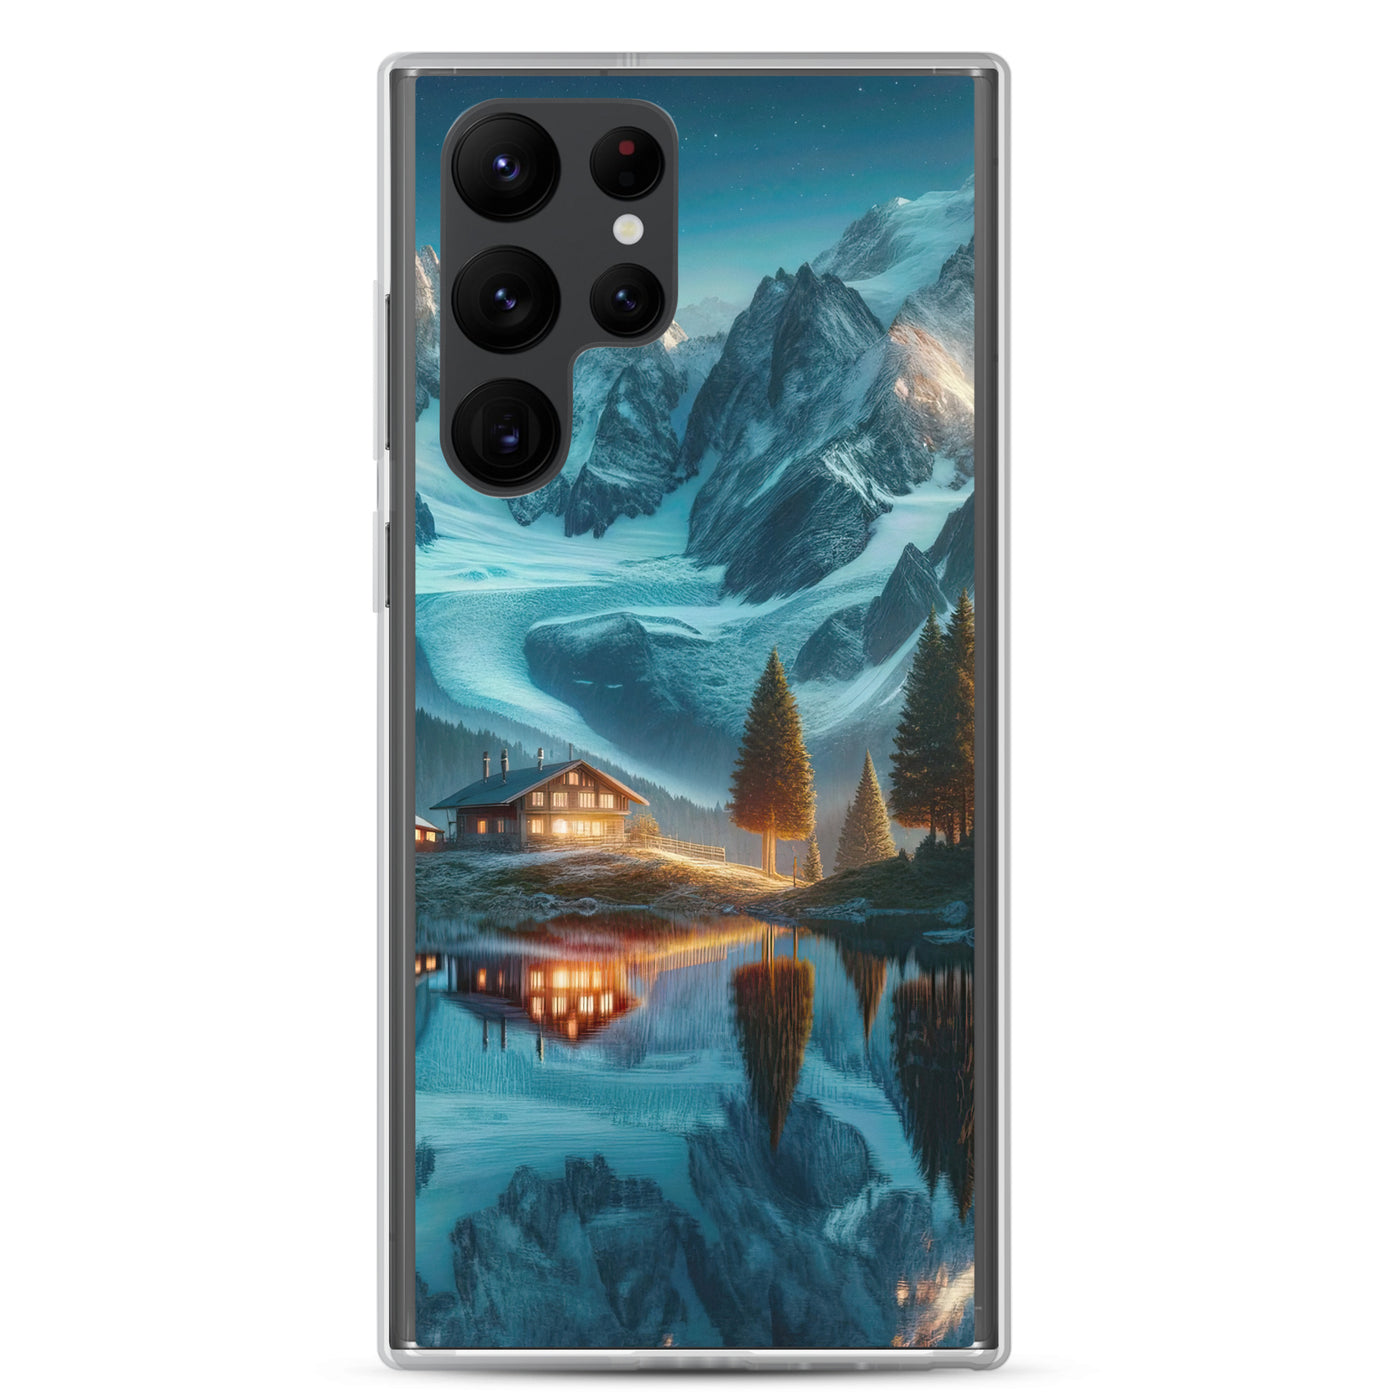 Stille Alpenmajestätik: Digitale Kunst mit Schnee und Bergsee-Spiegelung - Samsung Schutzhülle (durchsichtig) berge xxx yyy zzz Samsung Galaxy S22 Ultra